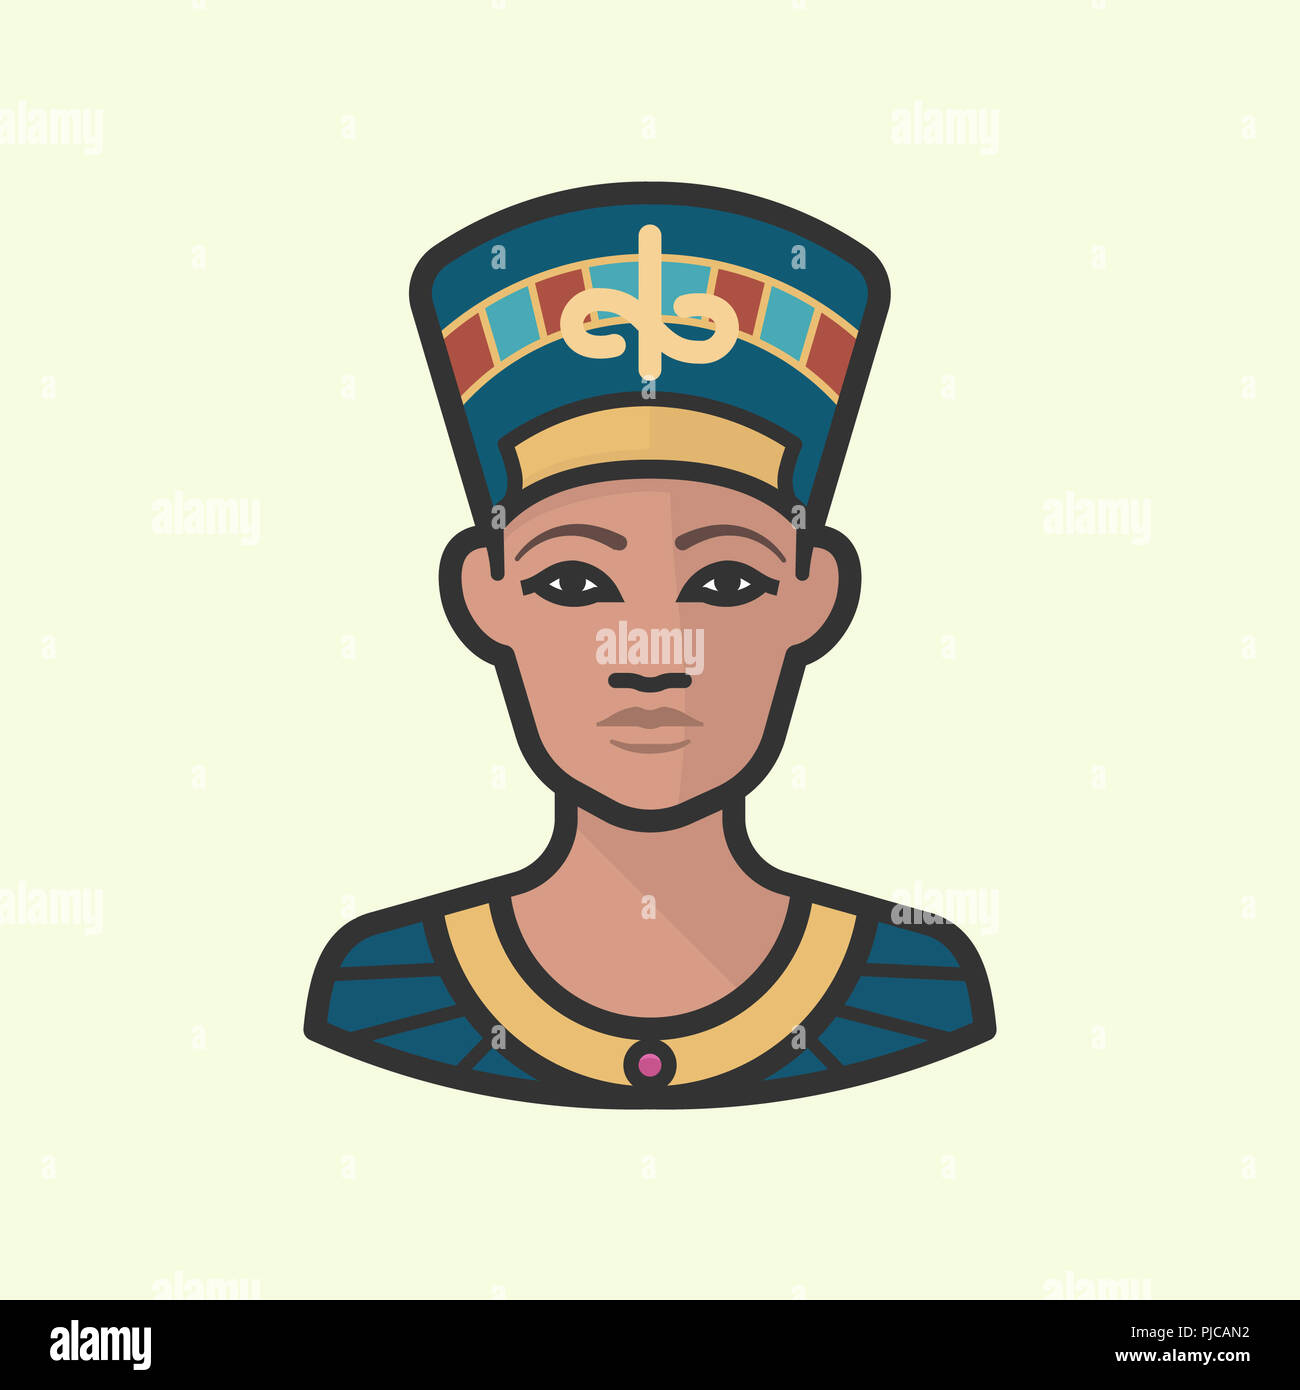 Нефертити Египетская царица рисунок карандашом